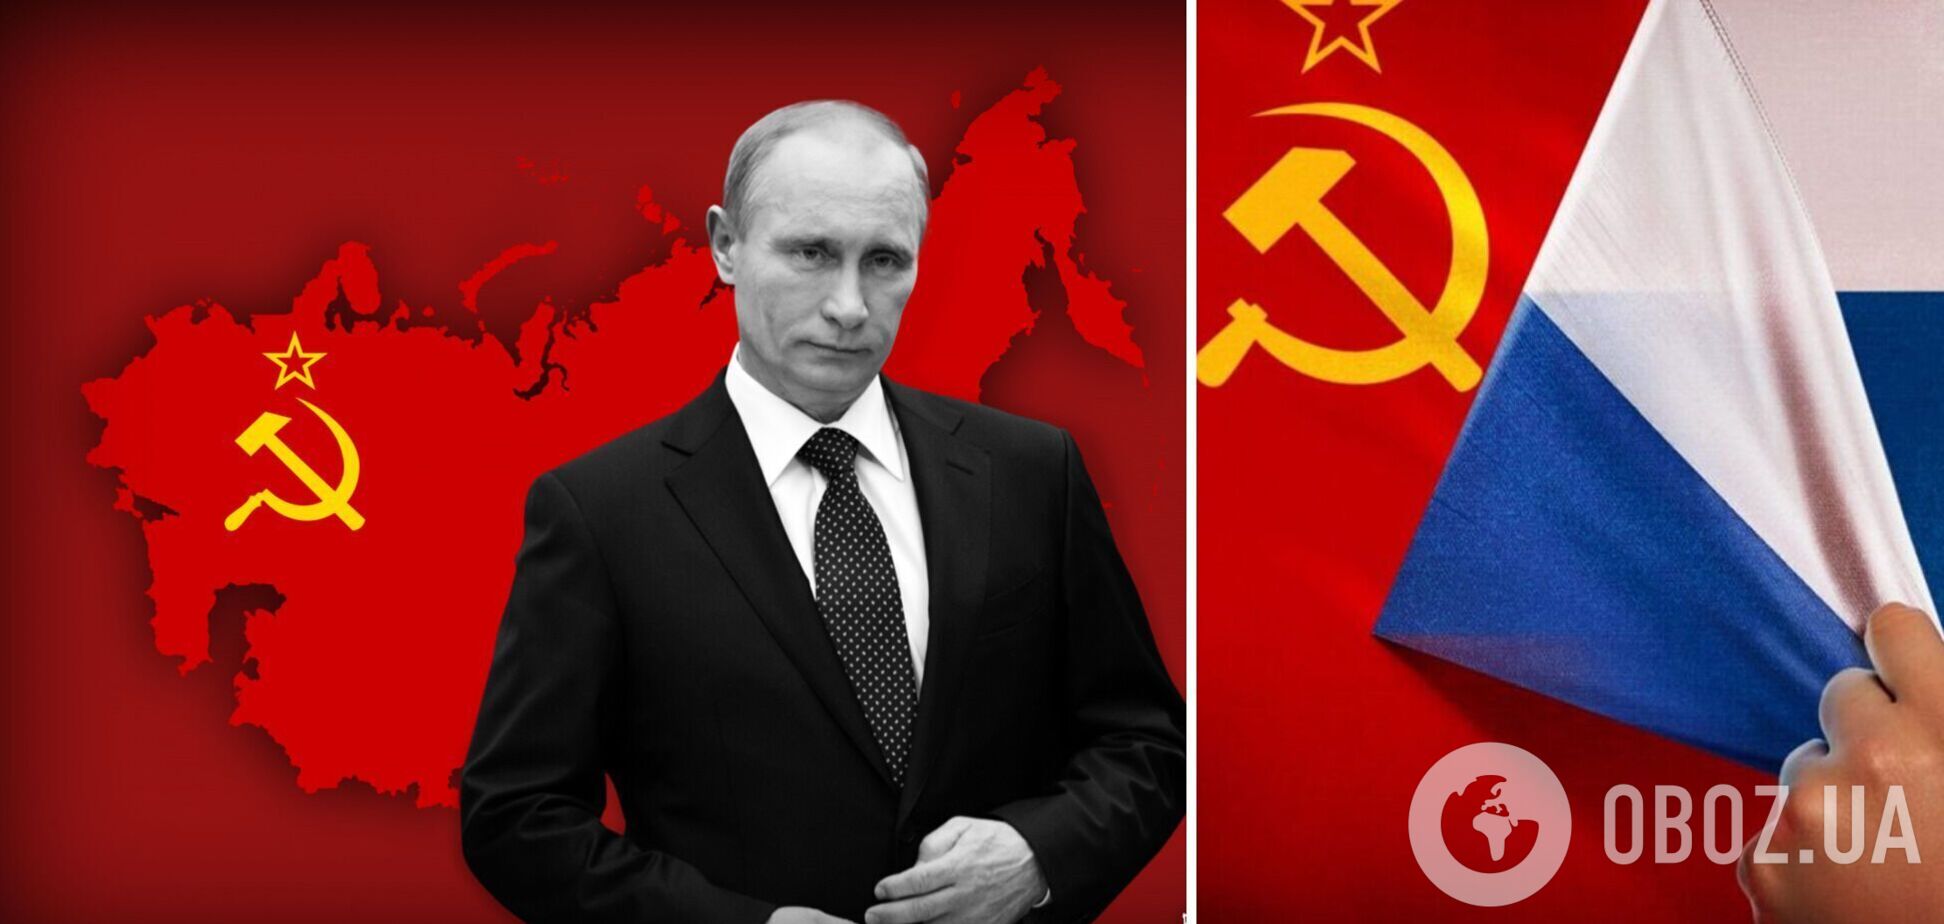 Путин и СССР 2.0: главный итог 2022 года